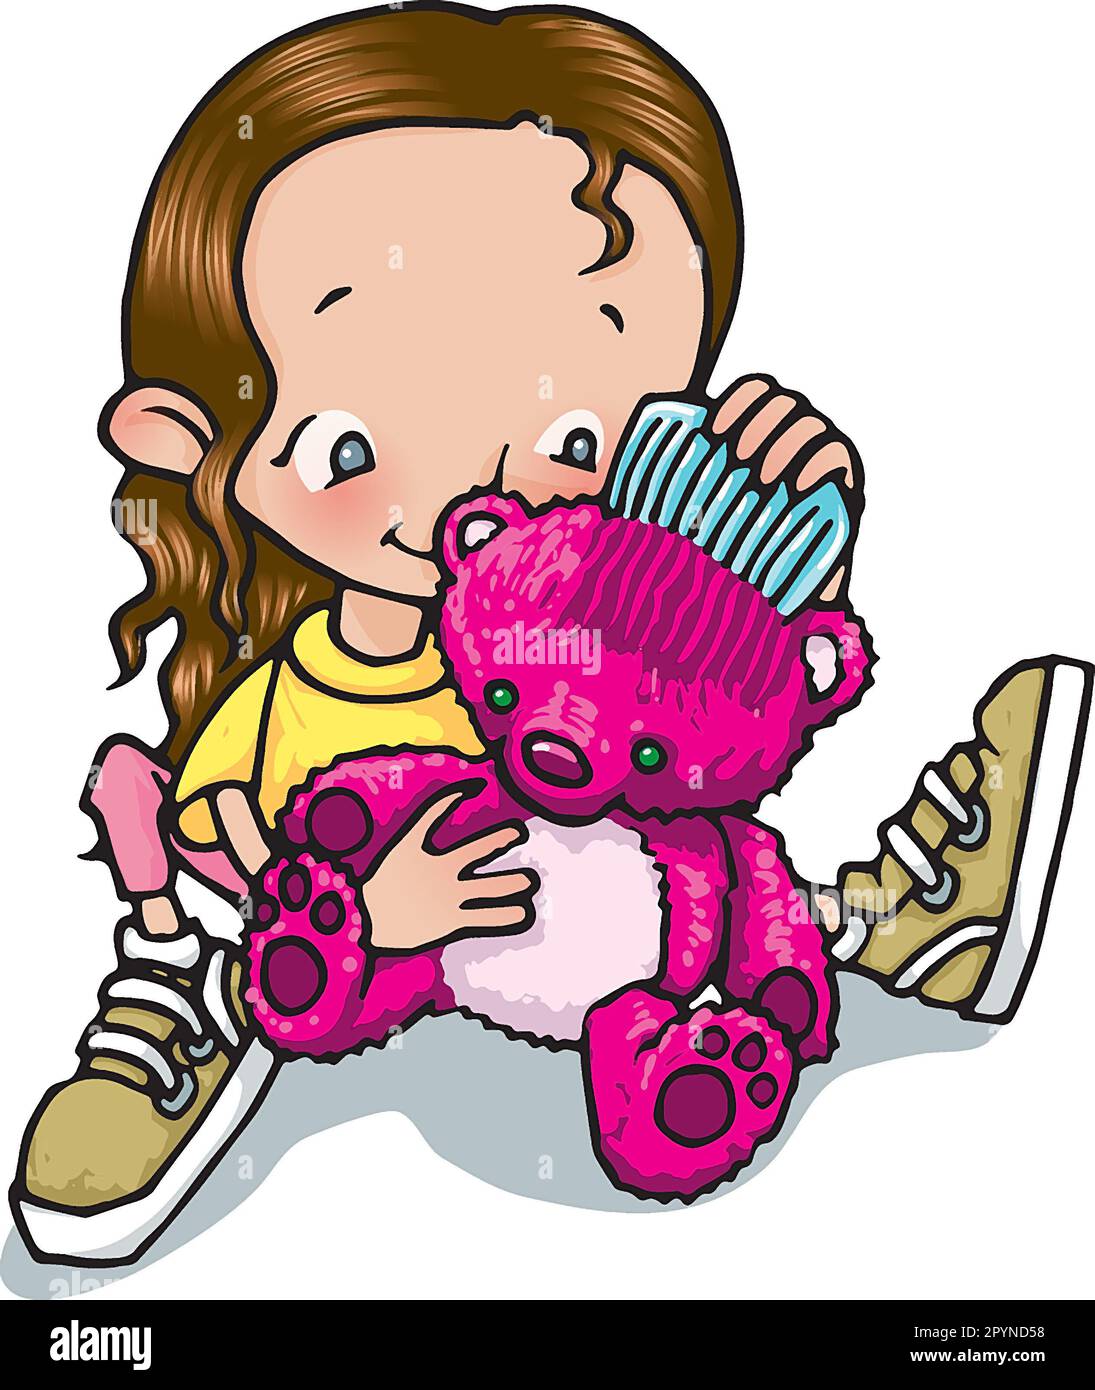 Kunst, junges Mädchen, 5-7, kämmt das Fell ihres rosa Teddybären, pädagogisches Spiel, Lernen durch Spiel, Erziehung, Kinderspielzeug, Mädchenspielzeug. Stockfoto